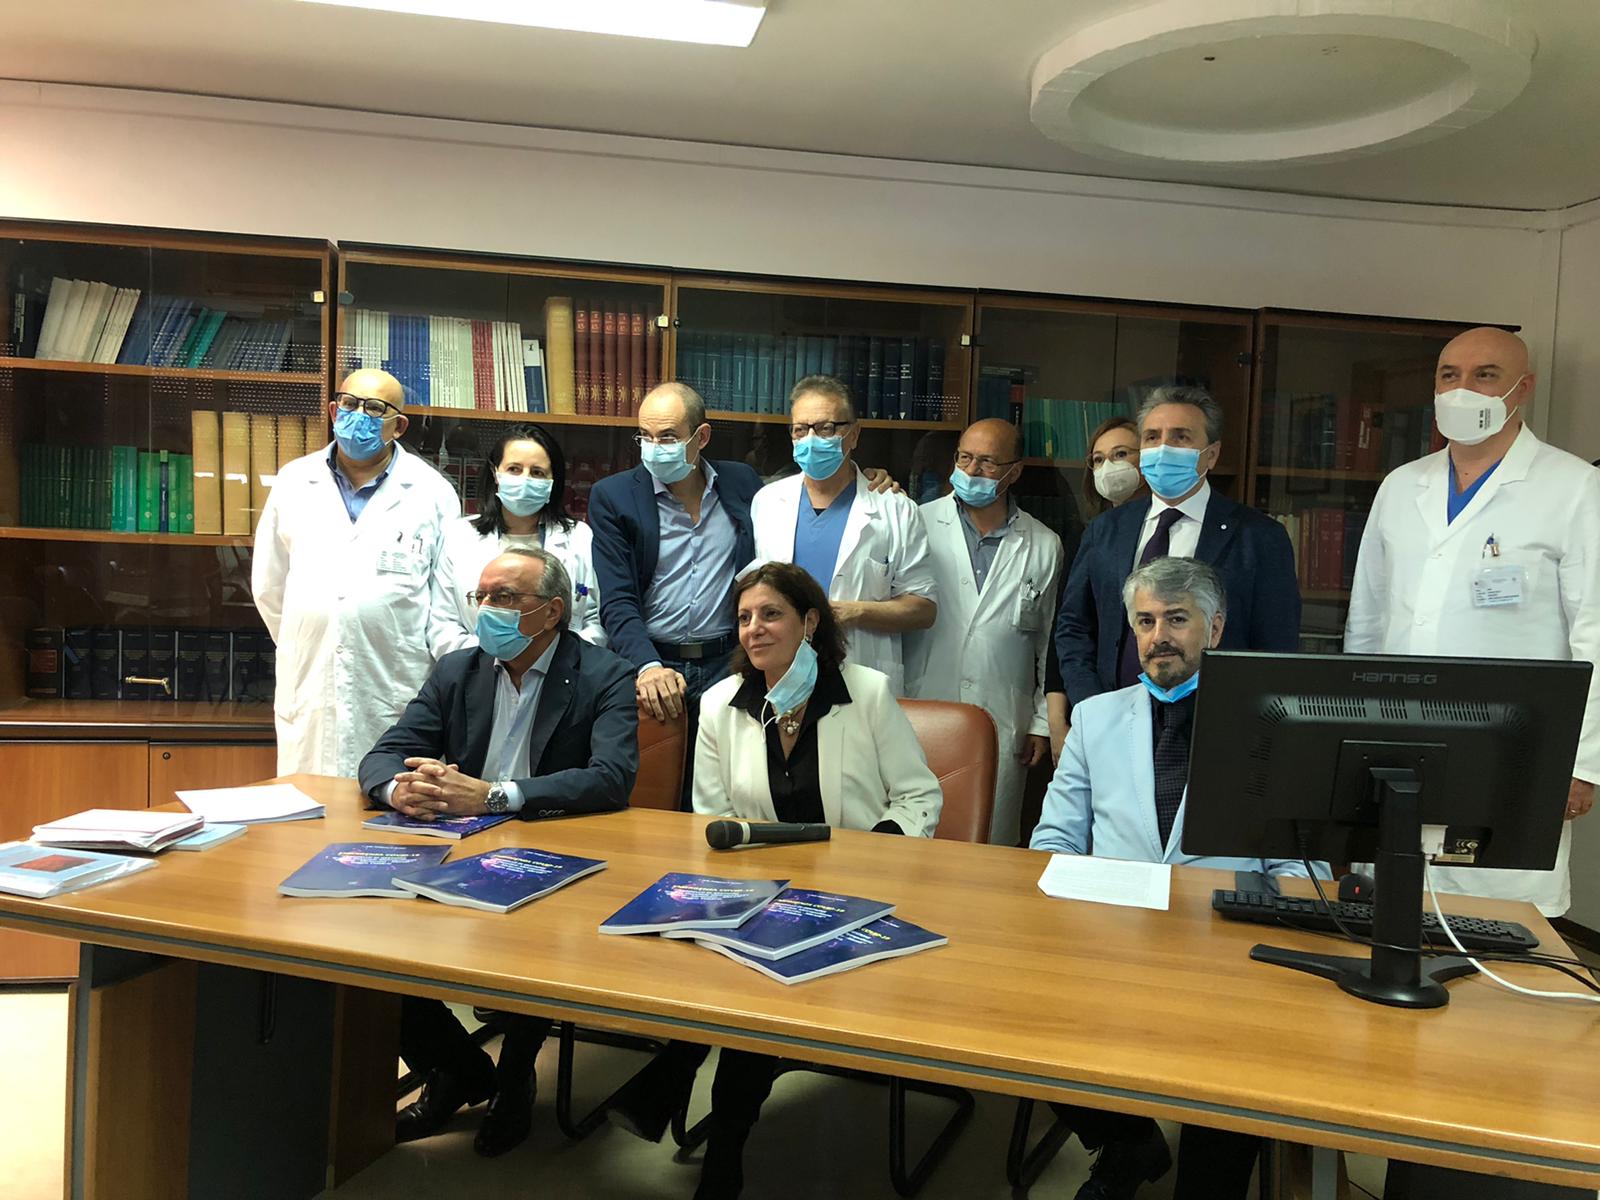 Coronavirus a Reggio Calabria, il Gom sperimenta nuova terapia